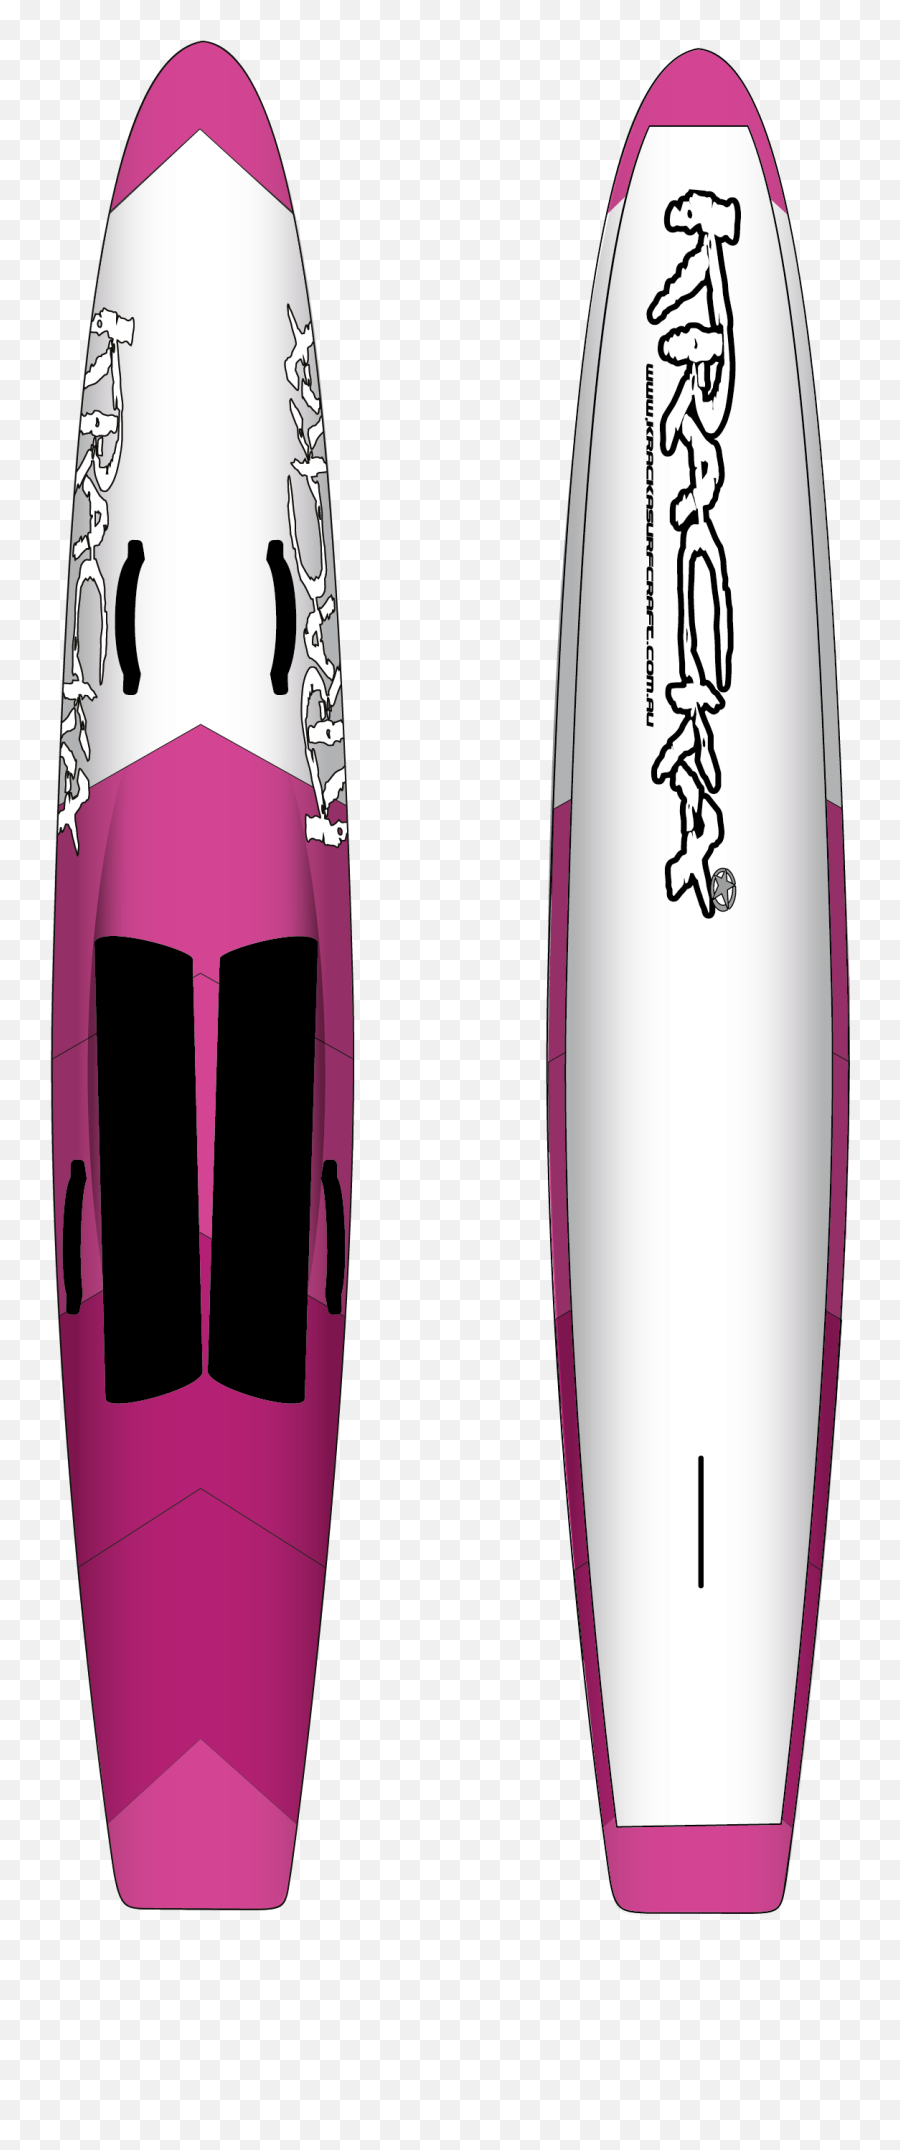 Kracka 10u00276 Raceboard Pink Arrow Aquasport - Lifejacket Png,Pink Arrow Png